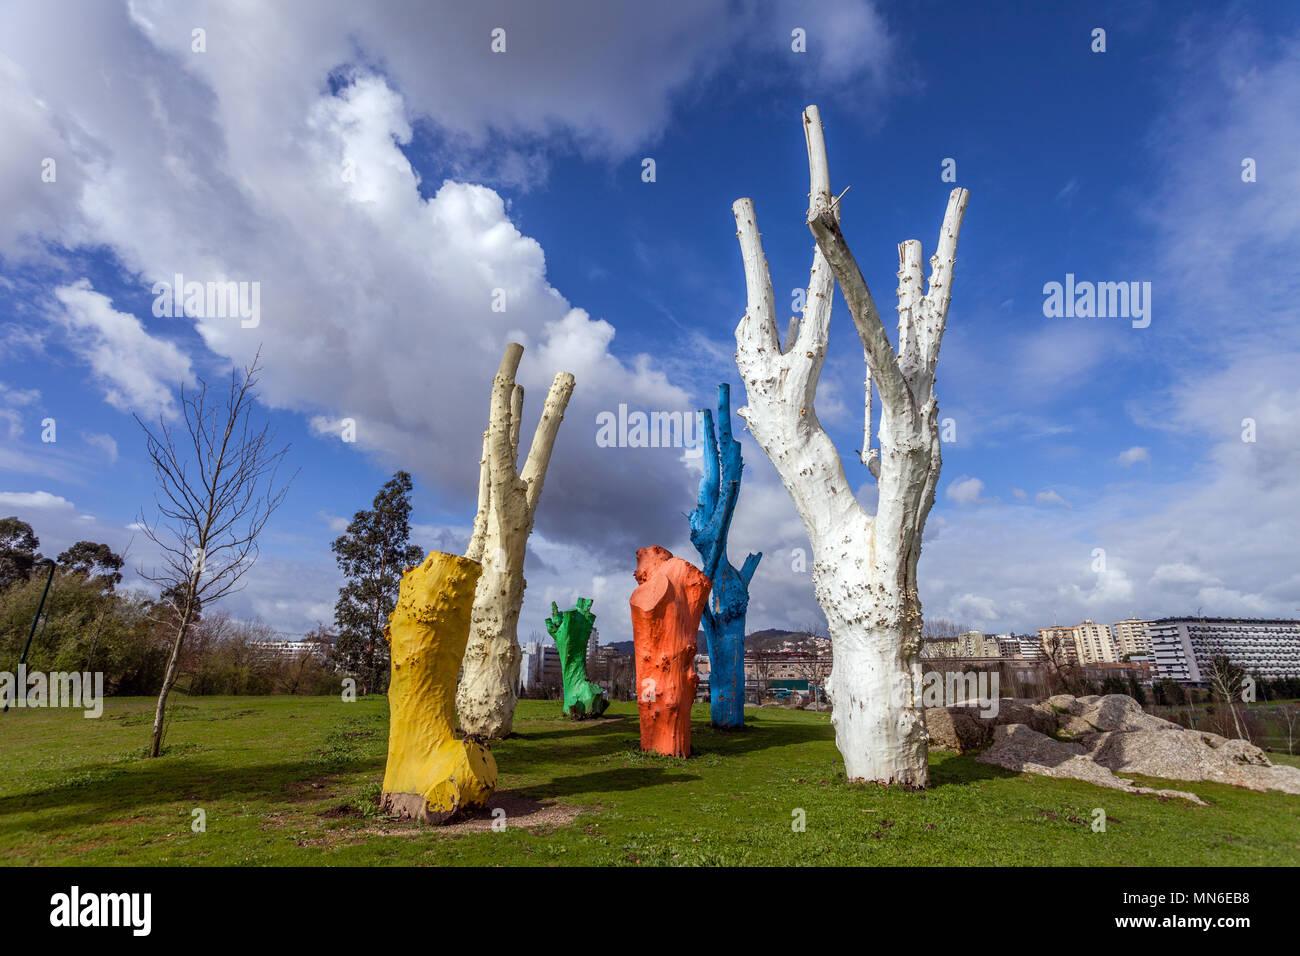 Vila Nova de Famalicao, Portugal. El arte urbano de coloridos árboles muertos pintados en el Parque da Devesa Parque Urbano. Foto de stock